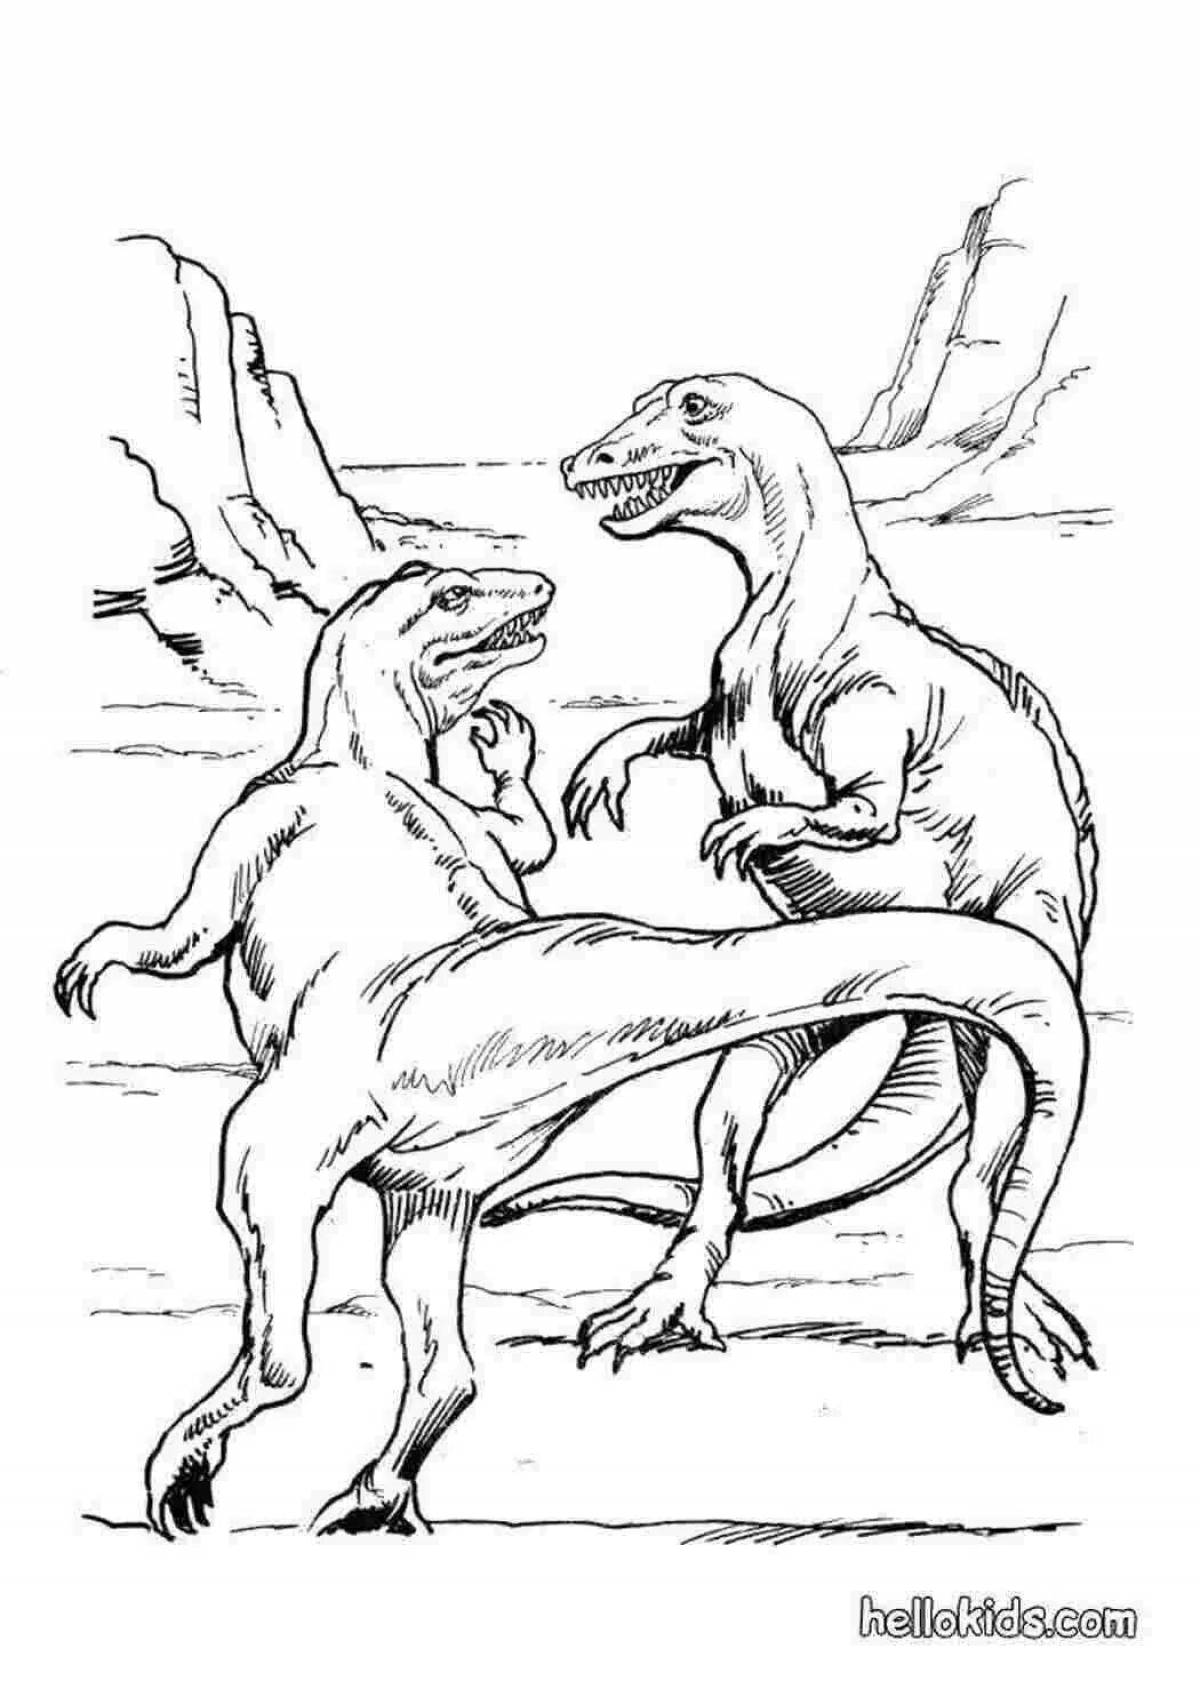 Волнующий дизайн битвы с динозаврами